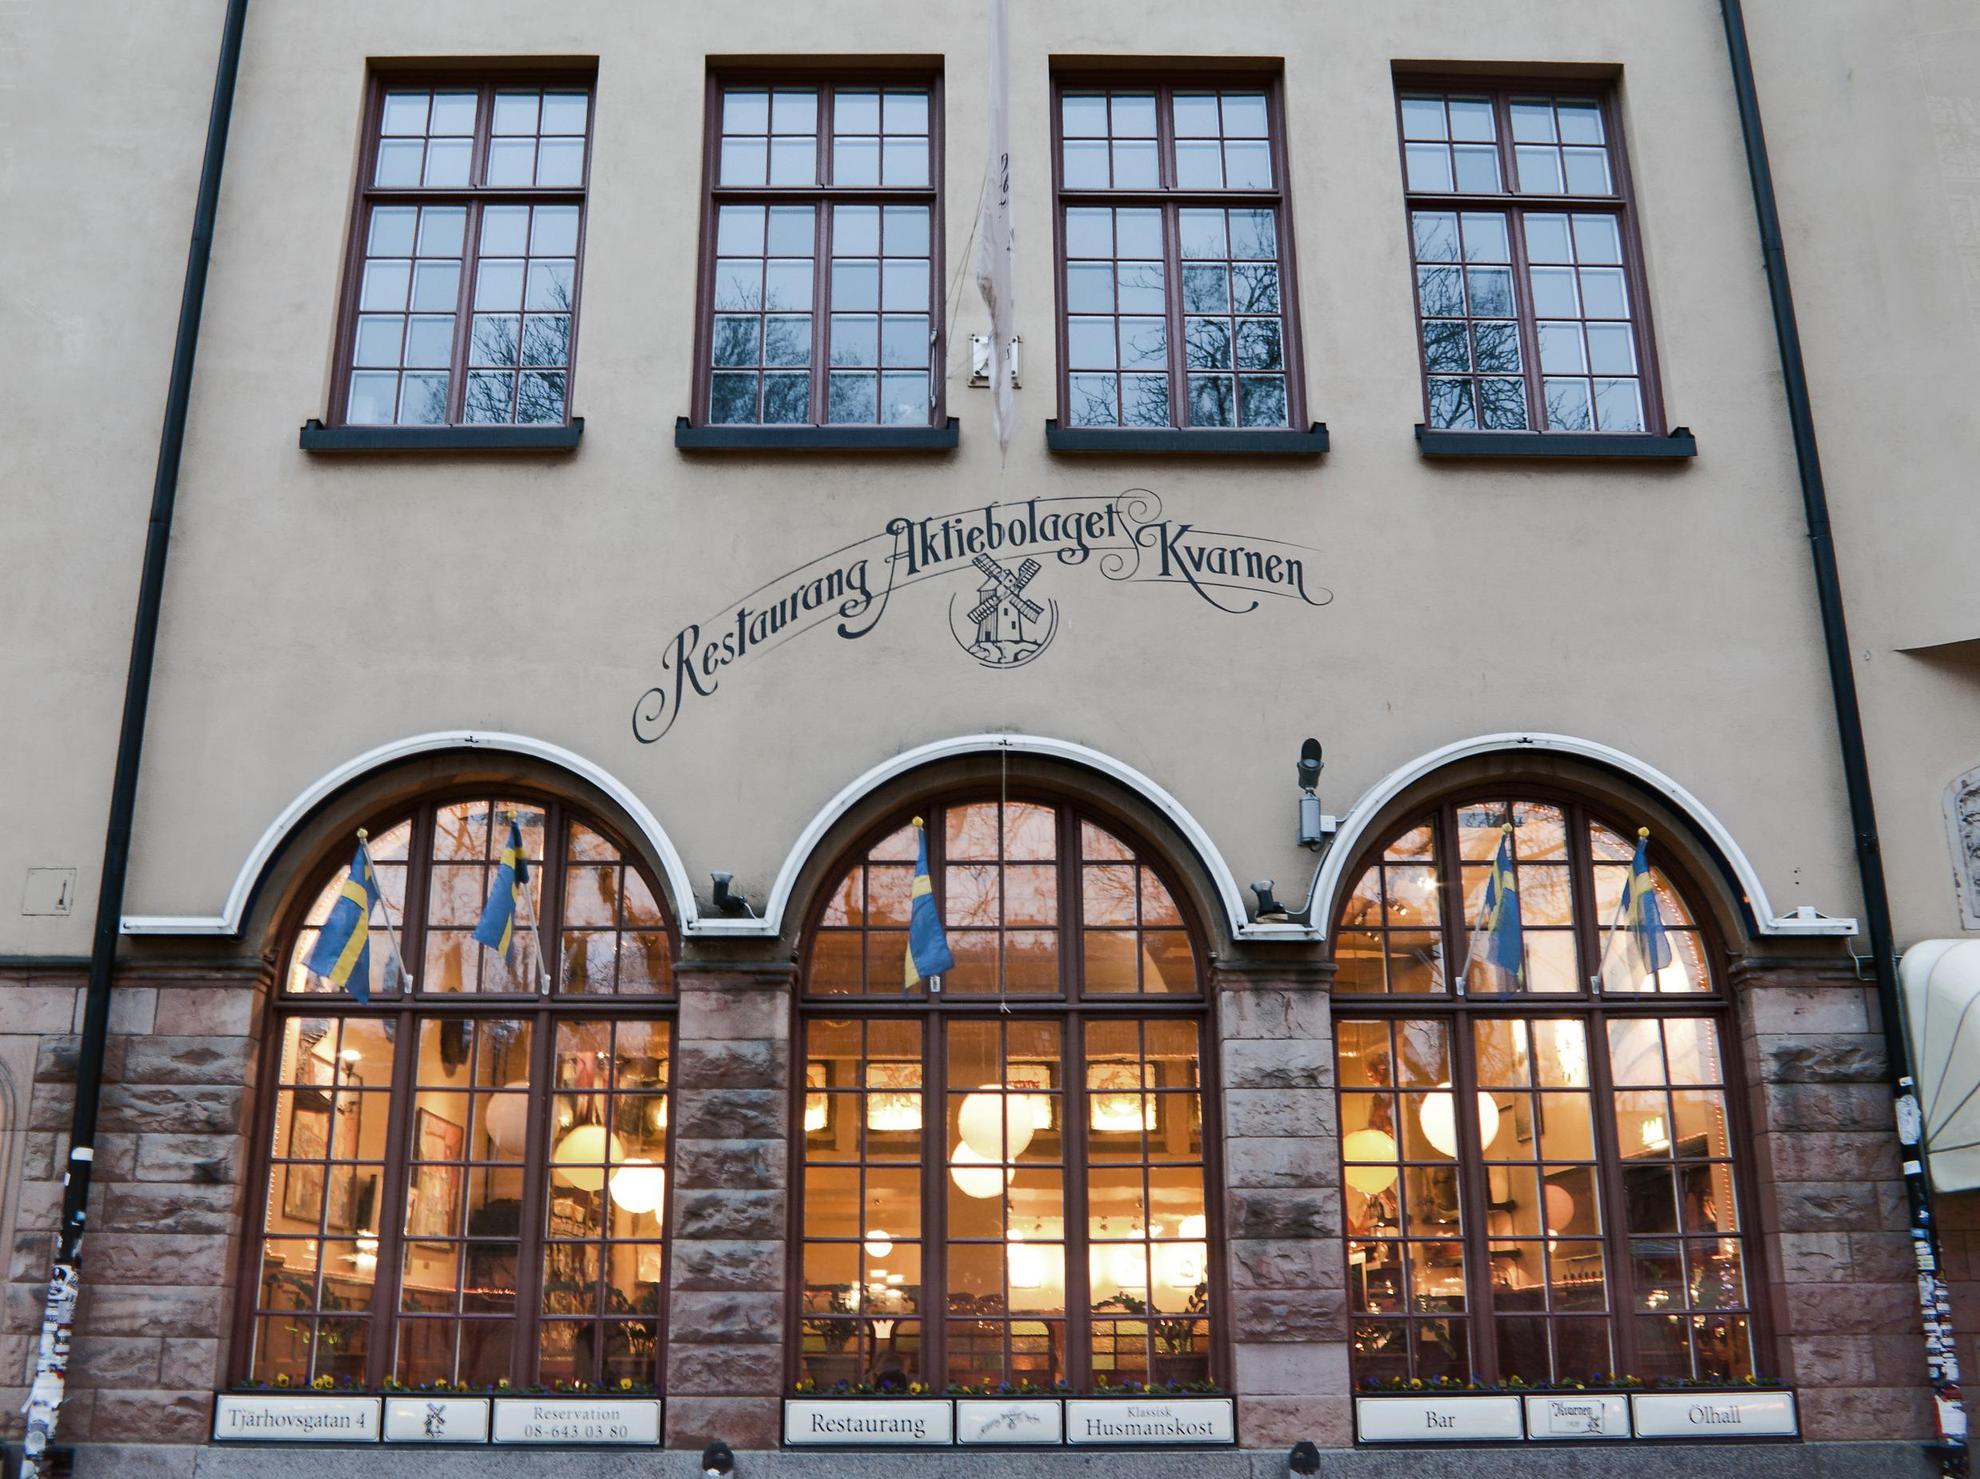 De buitenkant van het restaurant Kvarnen in Stockholm.